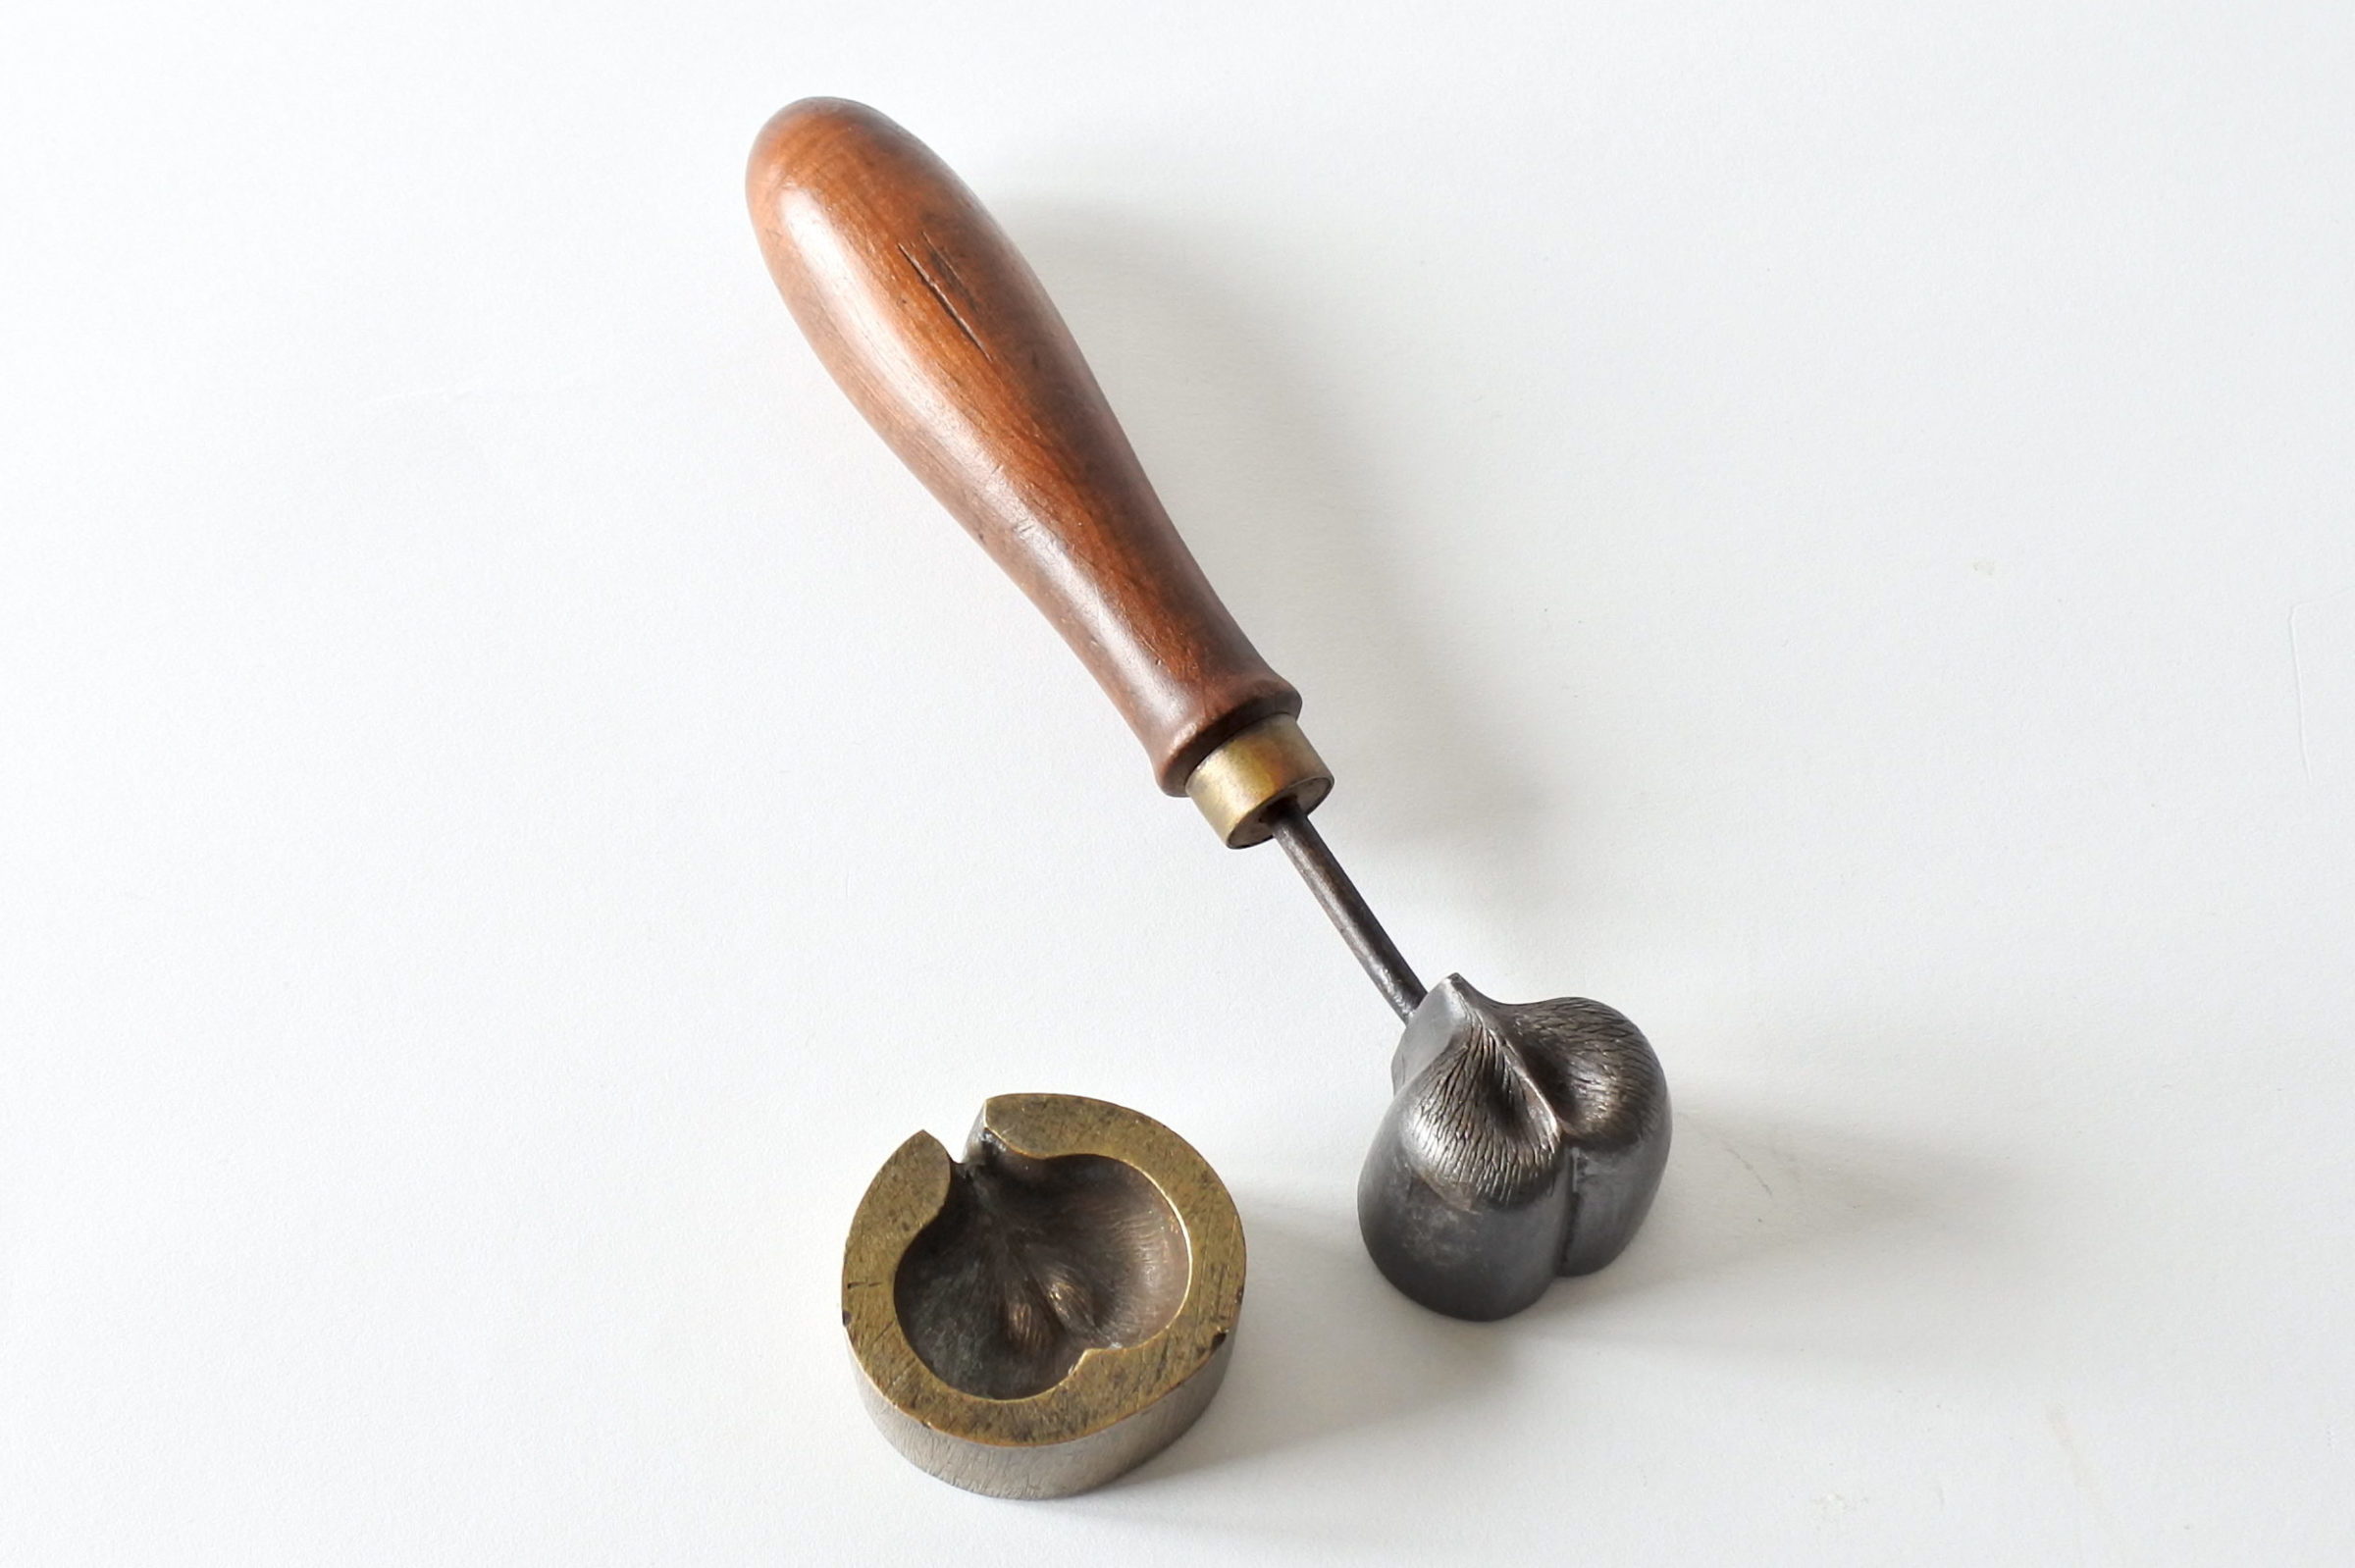 Stampo in ferro e bronzo a forma di castagna per applicazioni in stoffa o lamierino